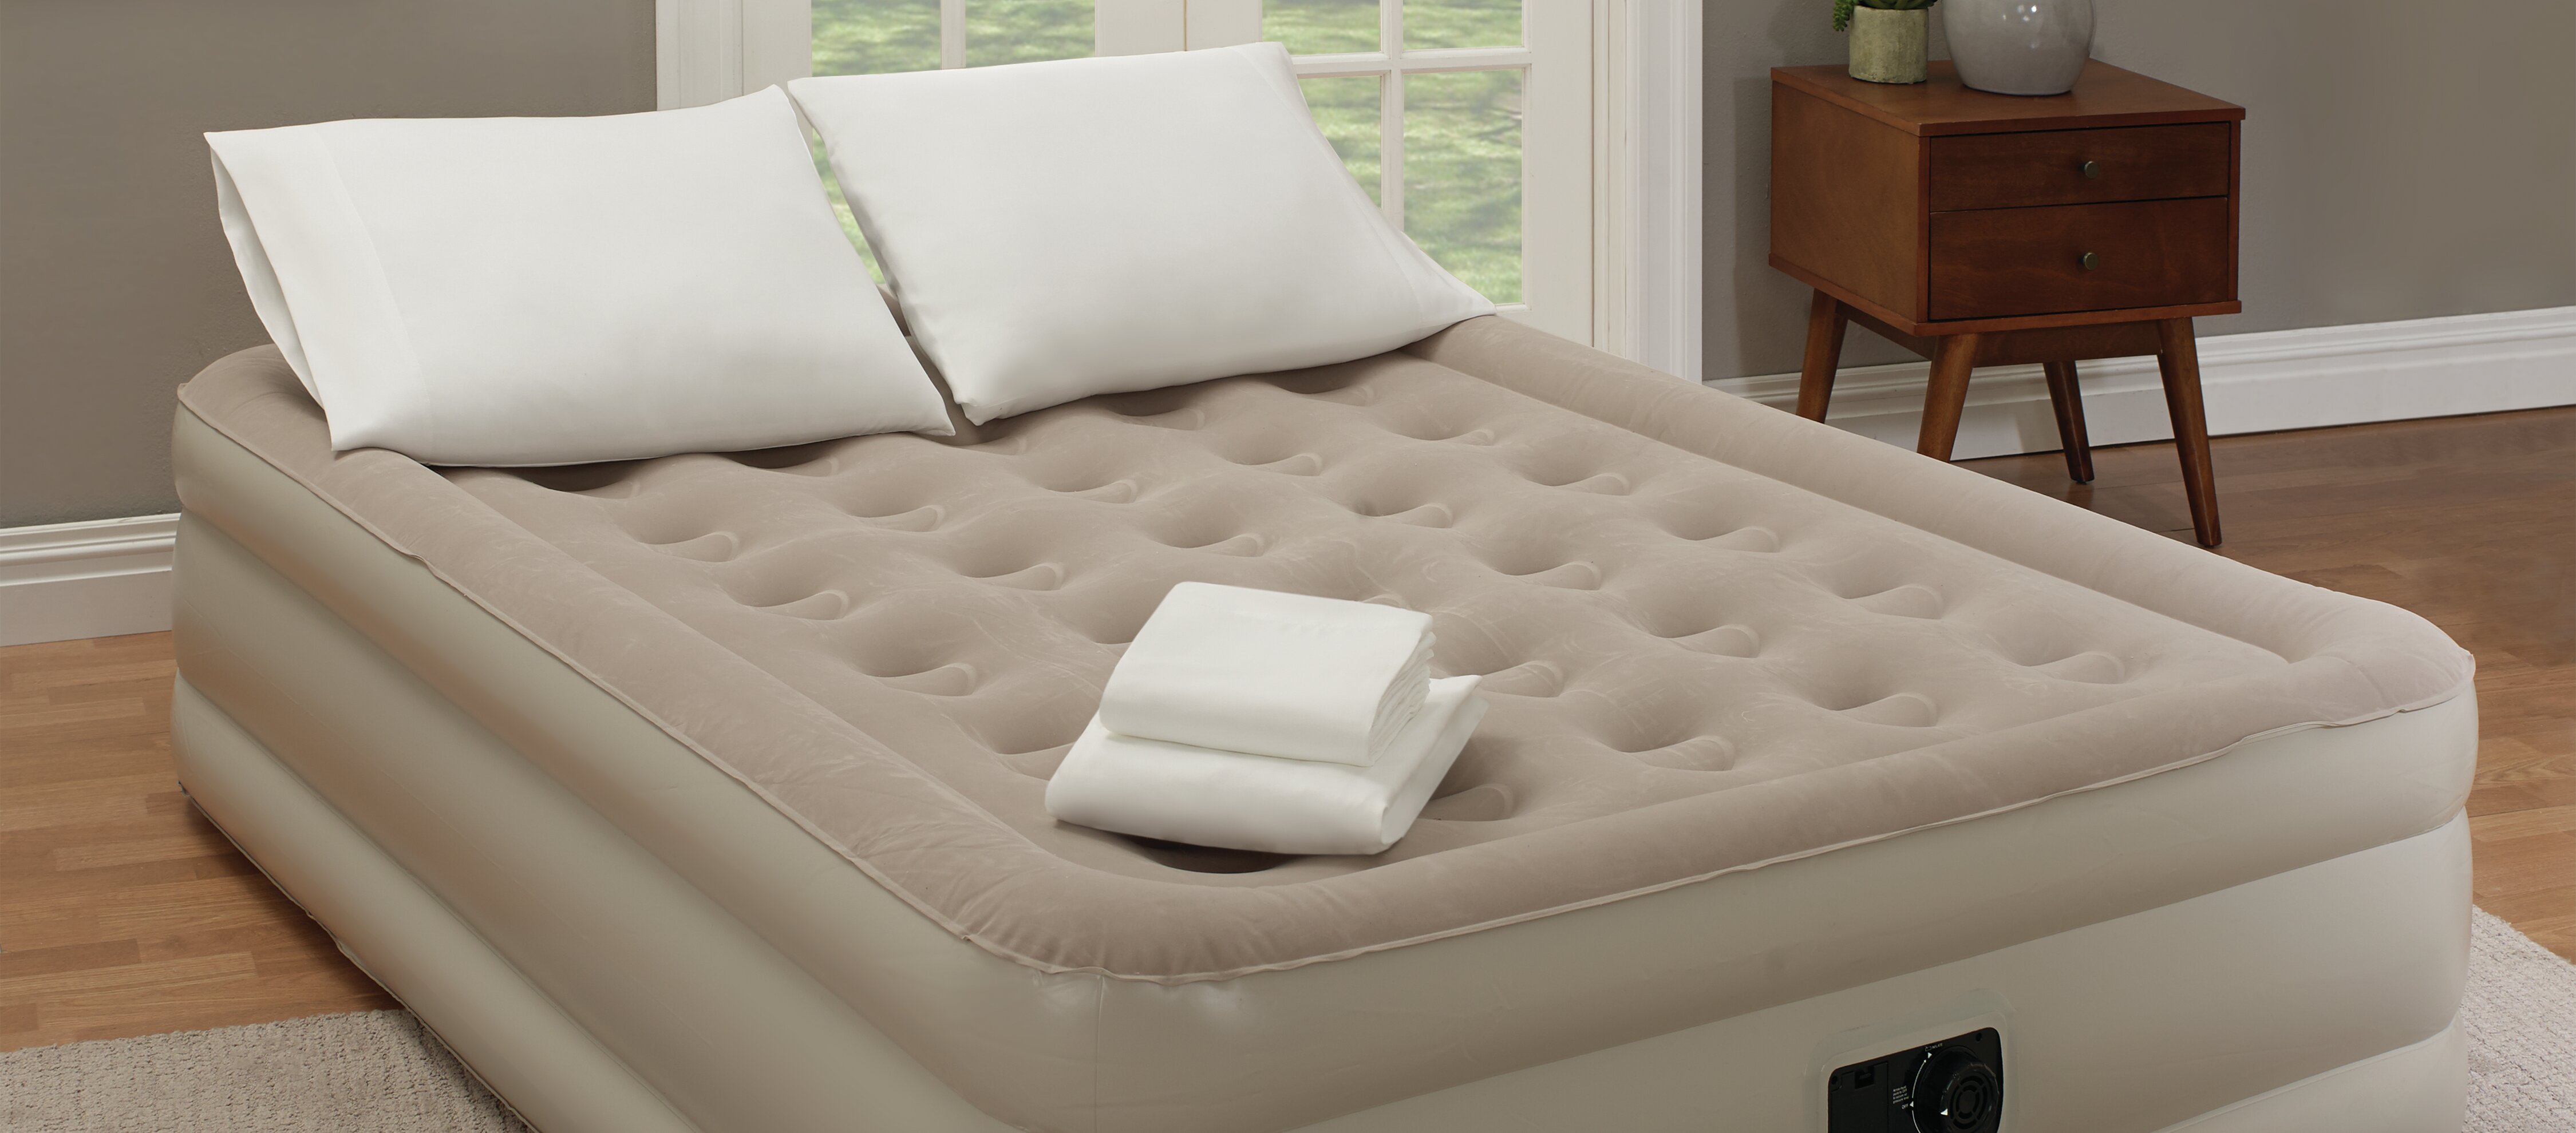 wayfair queen air mattress